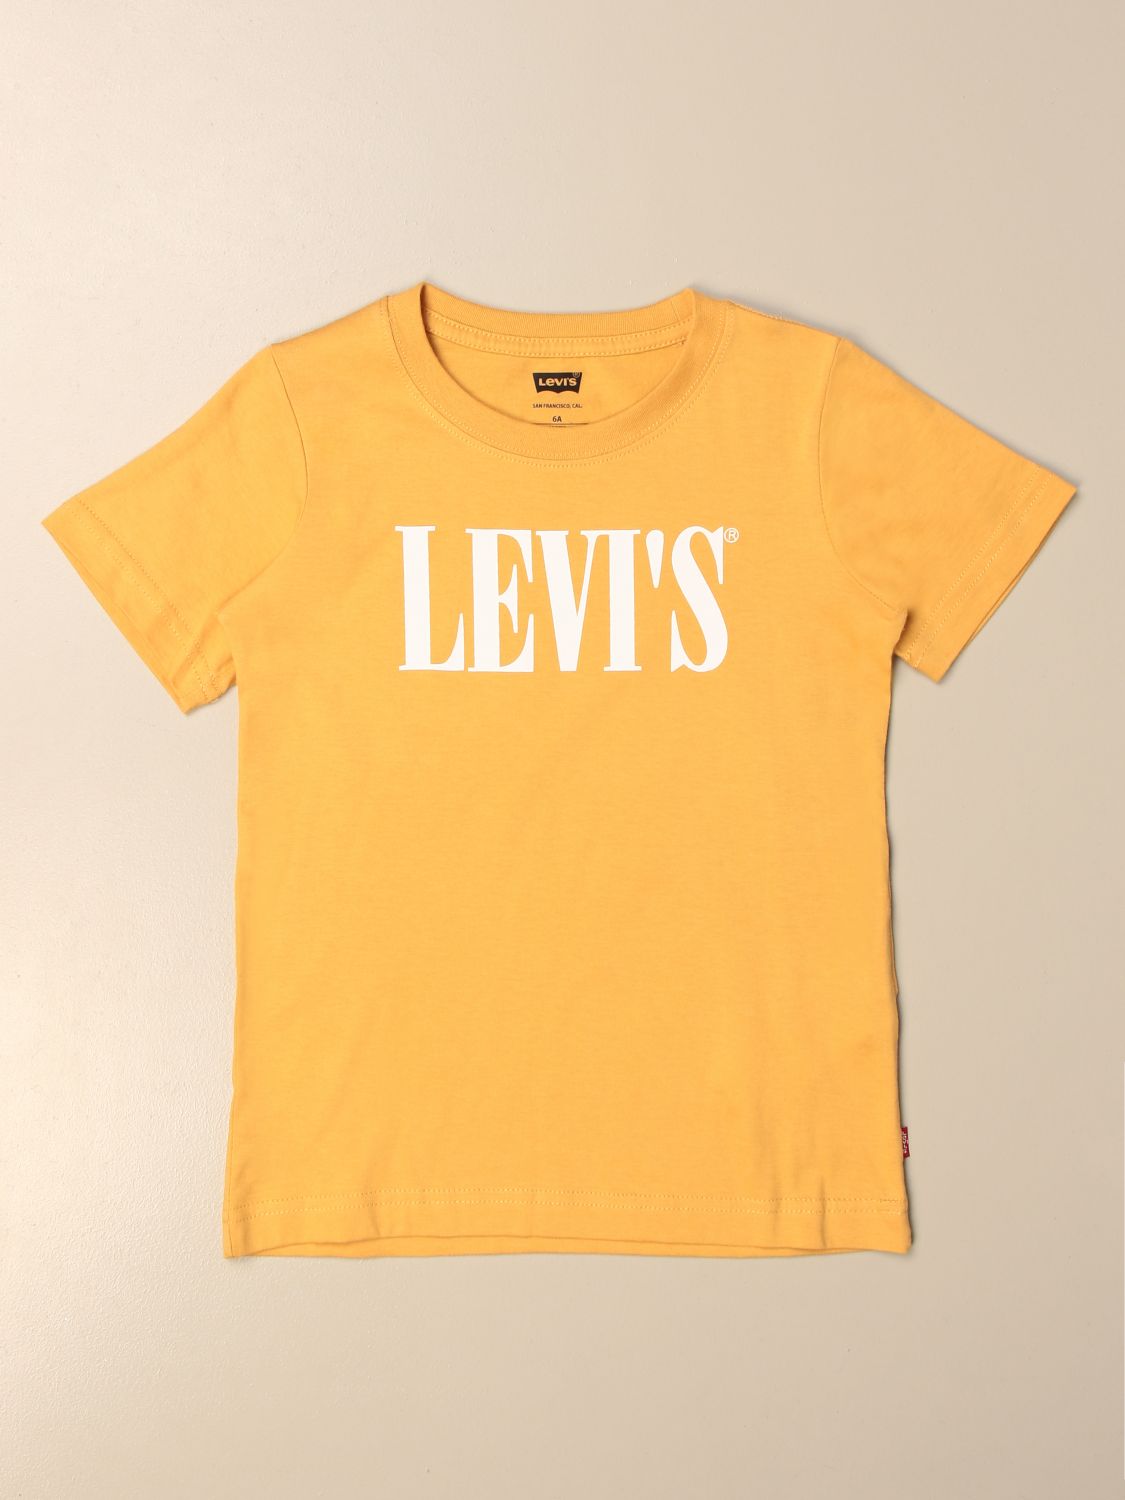 levi's toddler t shirt